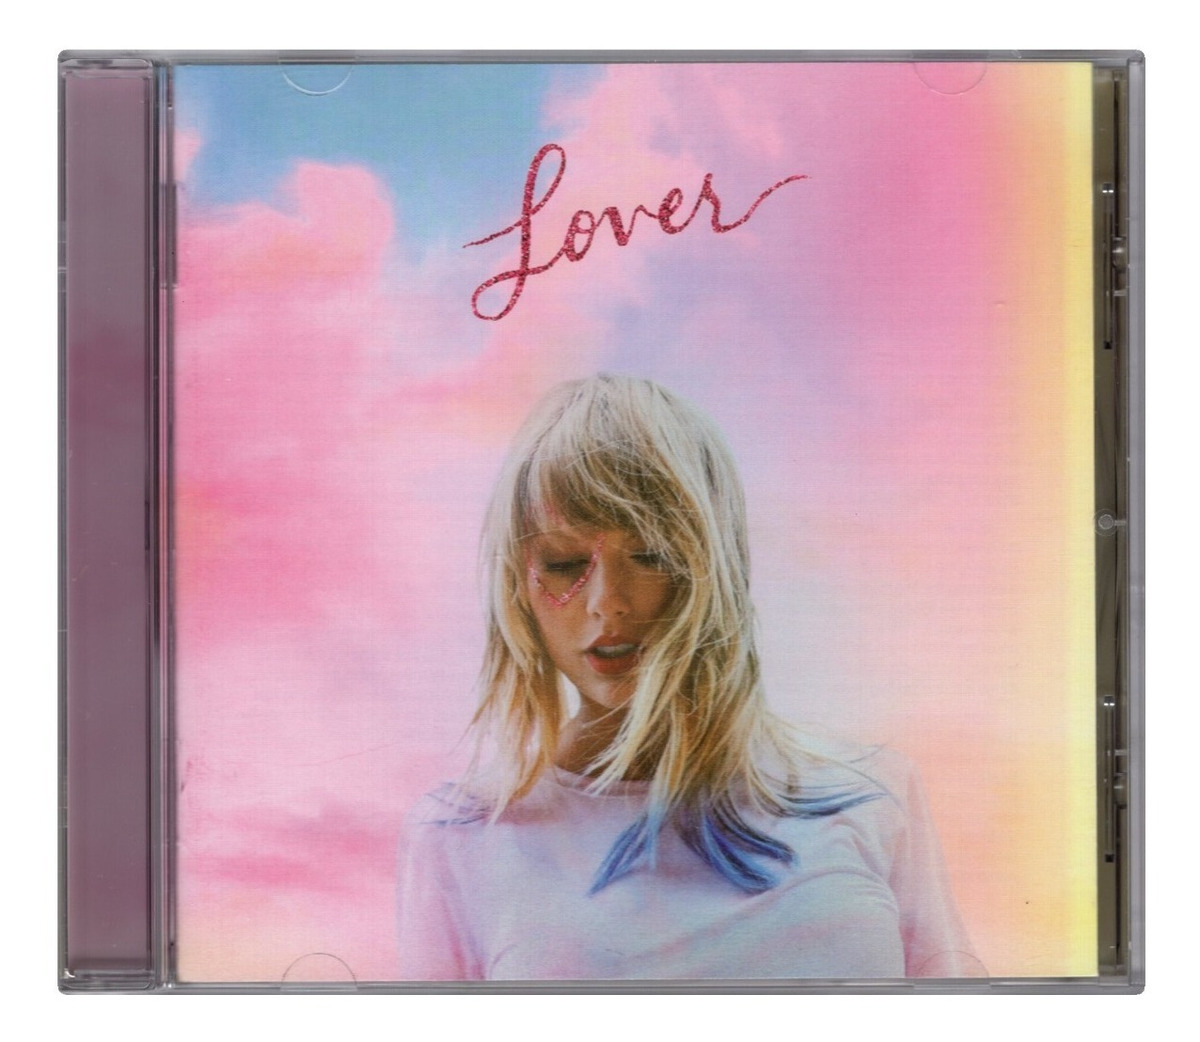 Lover Taylor Swift Cd 18 tracks